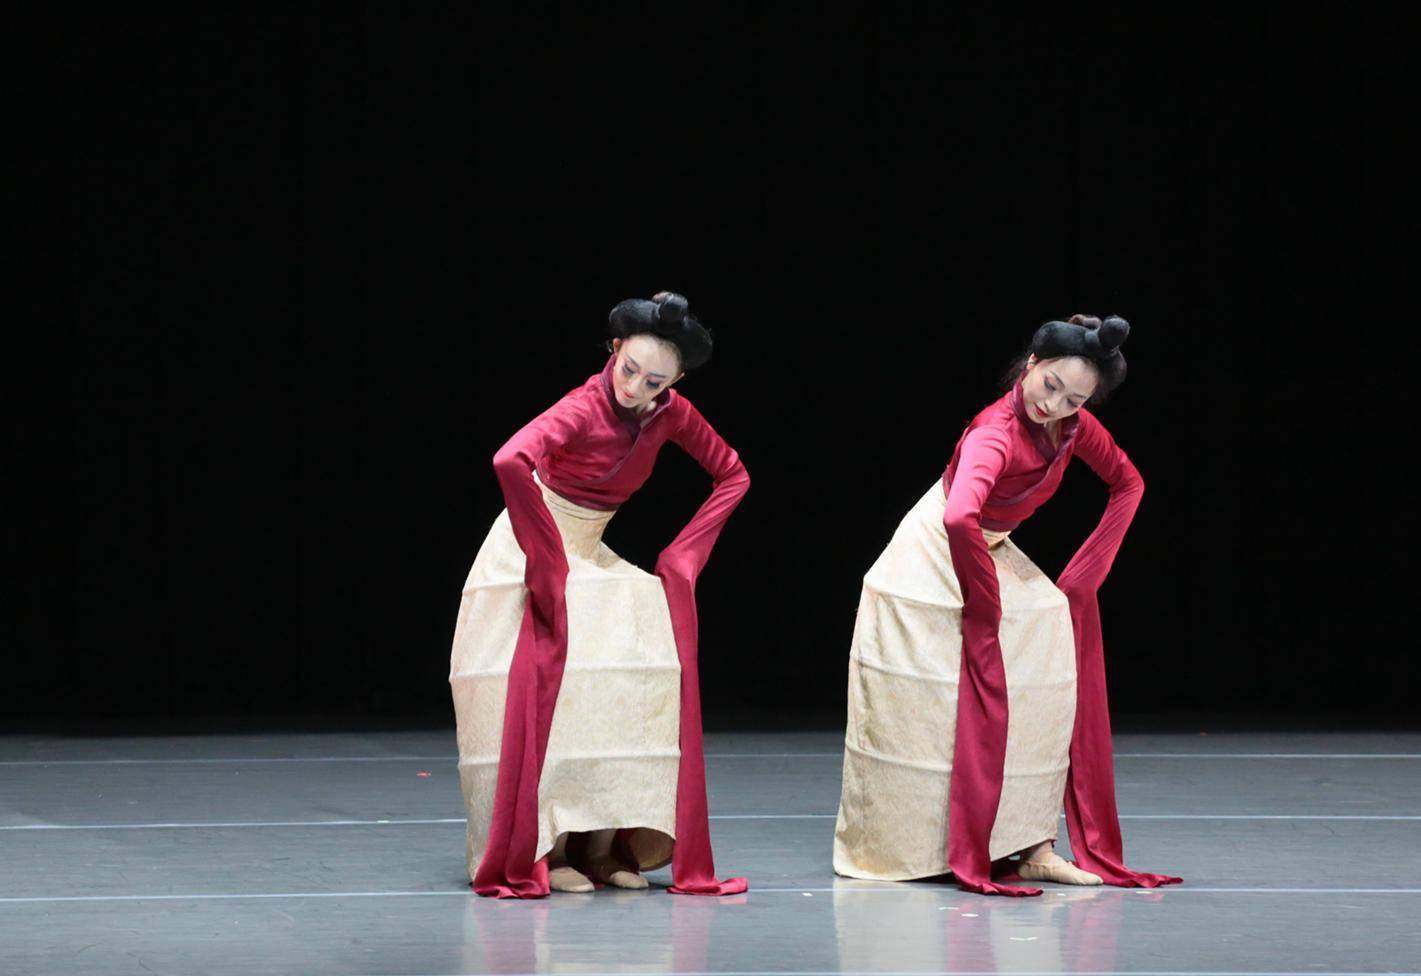 汉唐舞蹈剧场俑Ⅲ首演创新呈现中华传统文化一脉相承的美与灵思